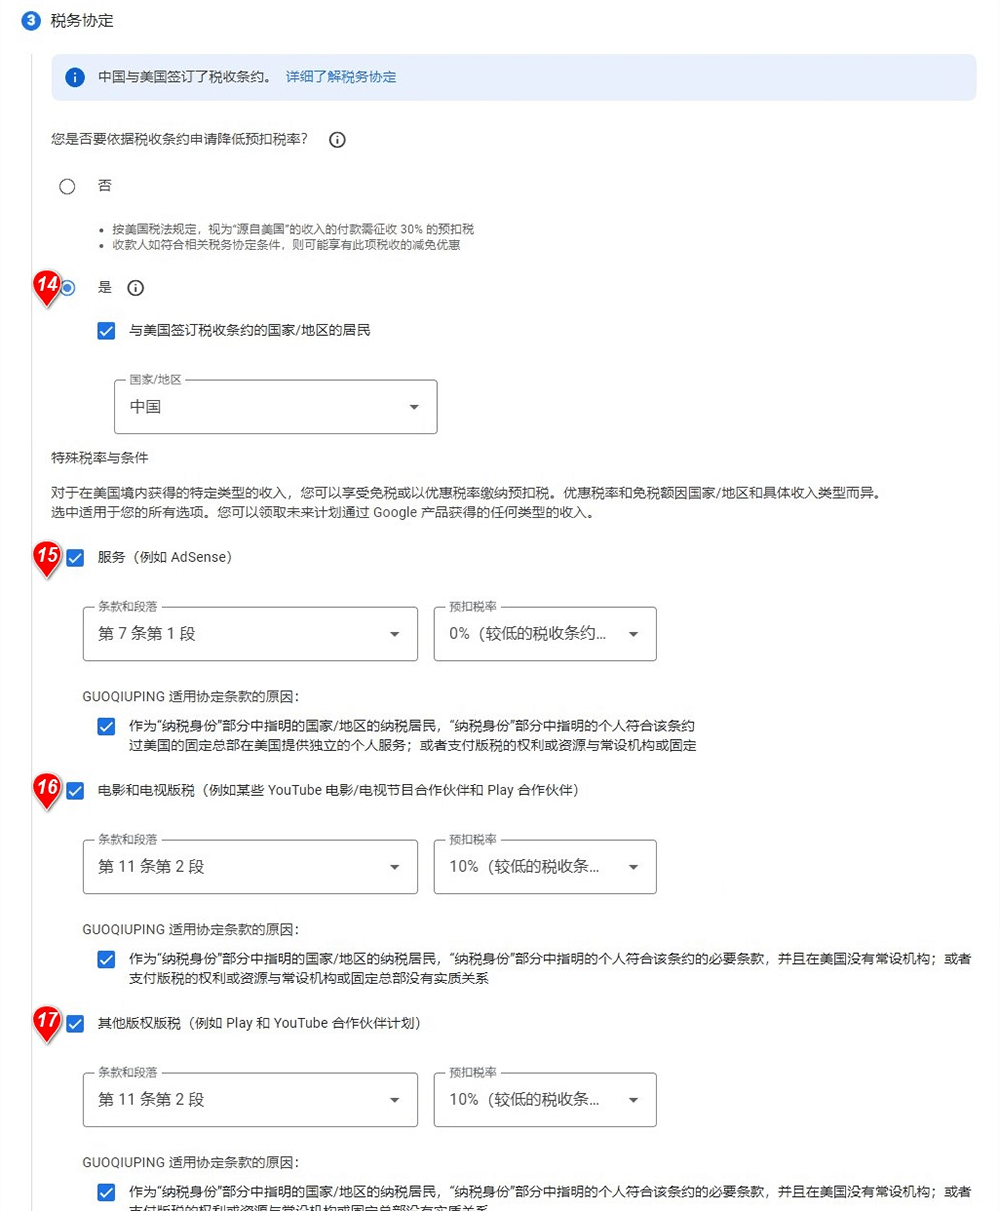 中国youtube如何填写（W-8BEN）,让Adsense账号税率为零